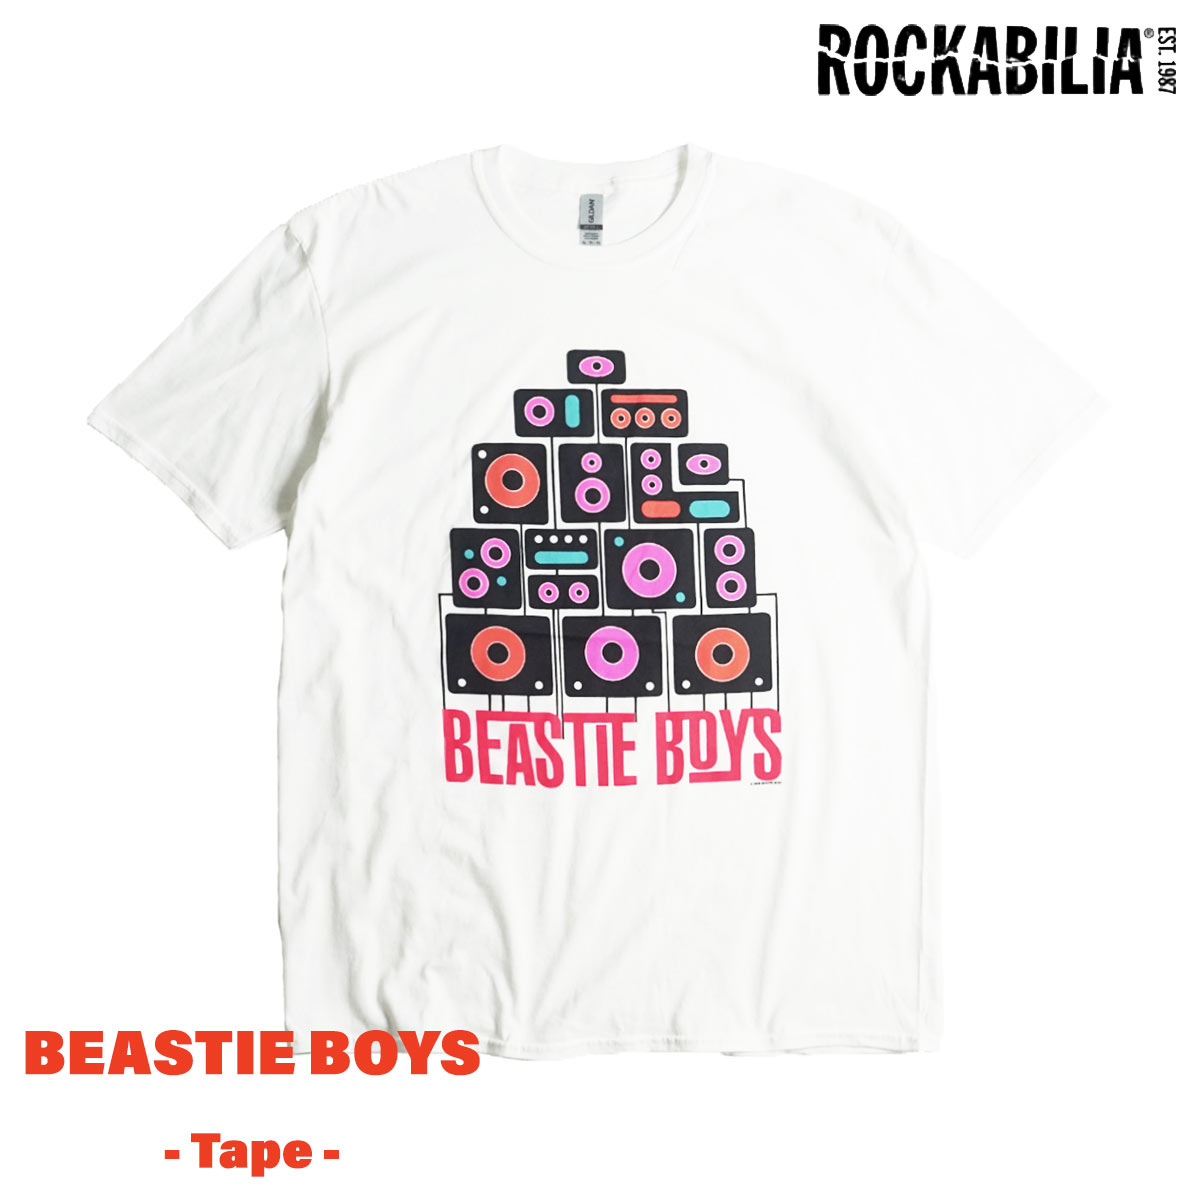 ロッカビリア ROCKABILIA バンドTシャツ ビースティーボーイズ テープ メンズ S-XXL...